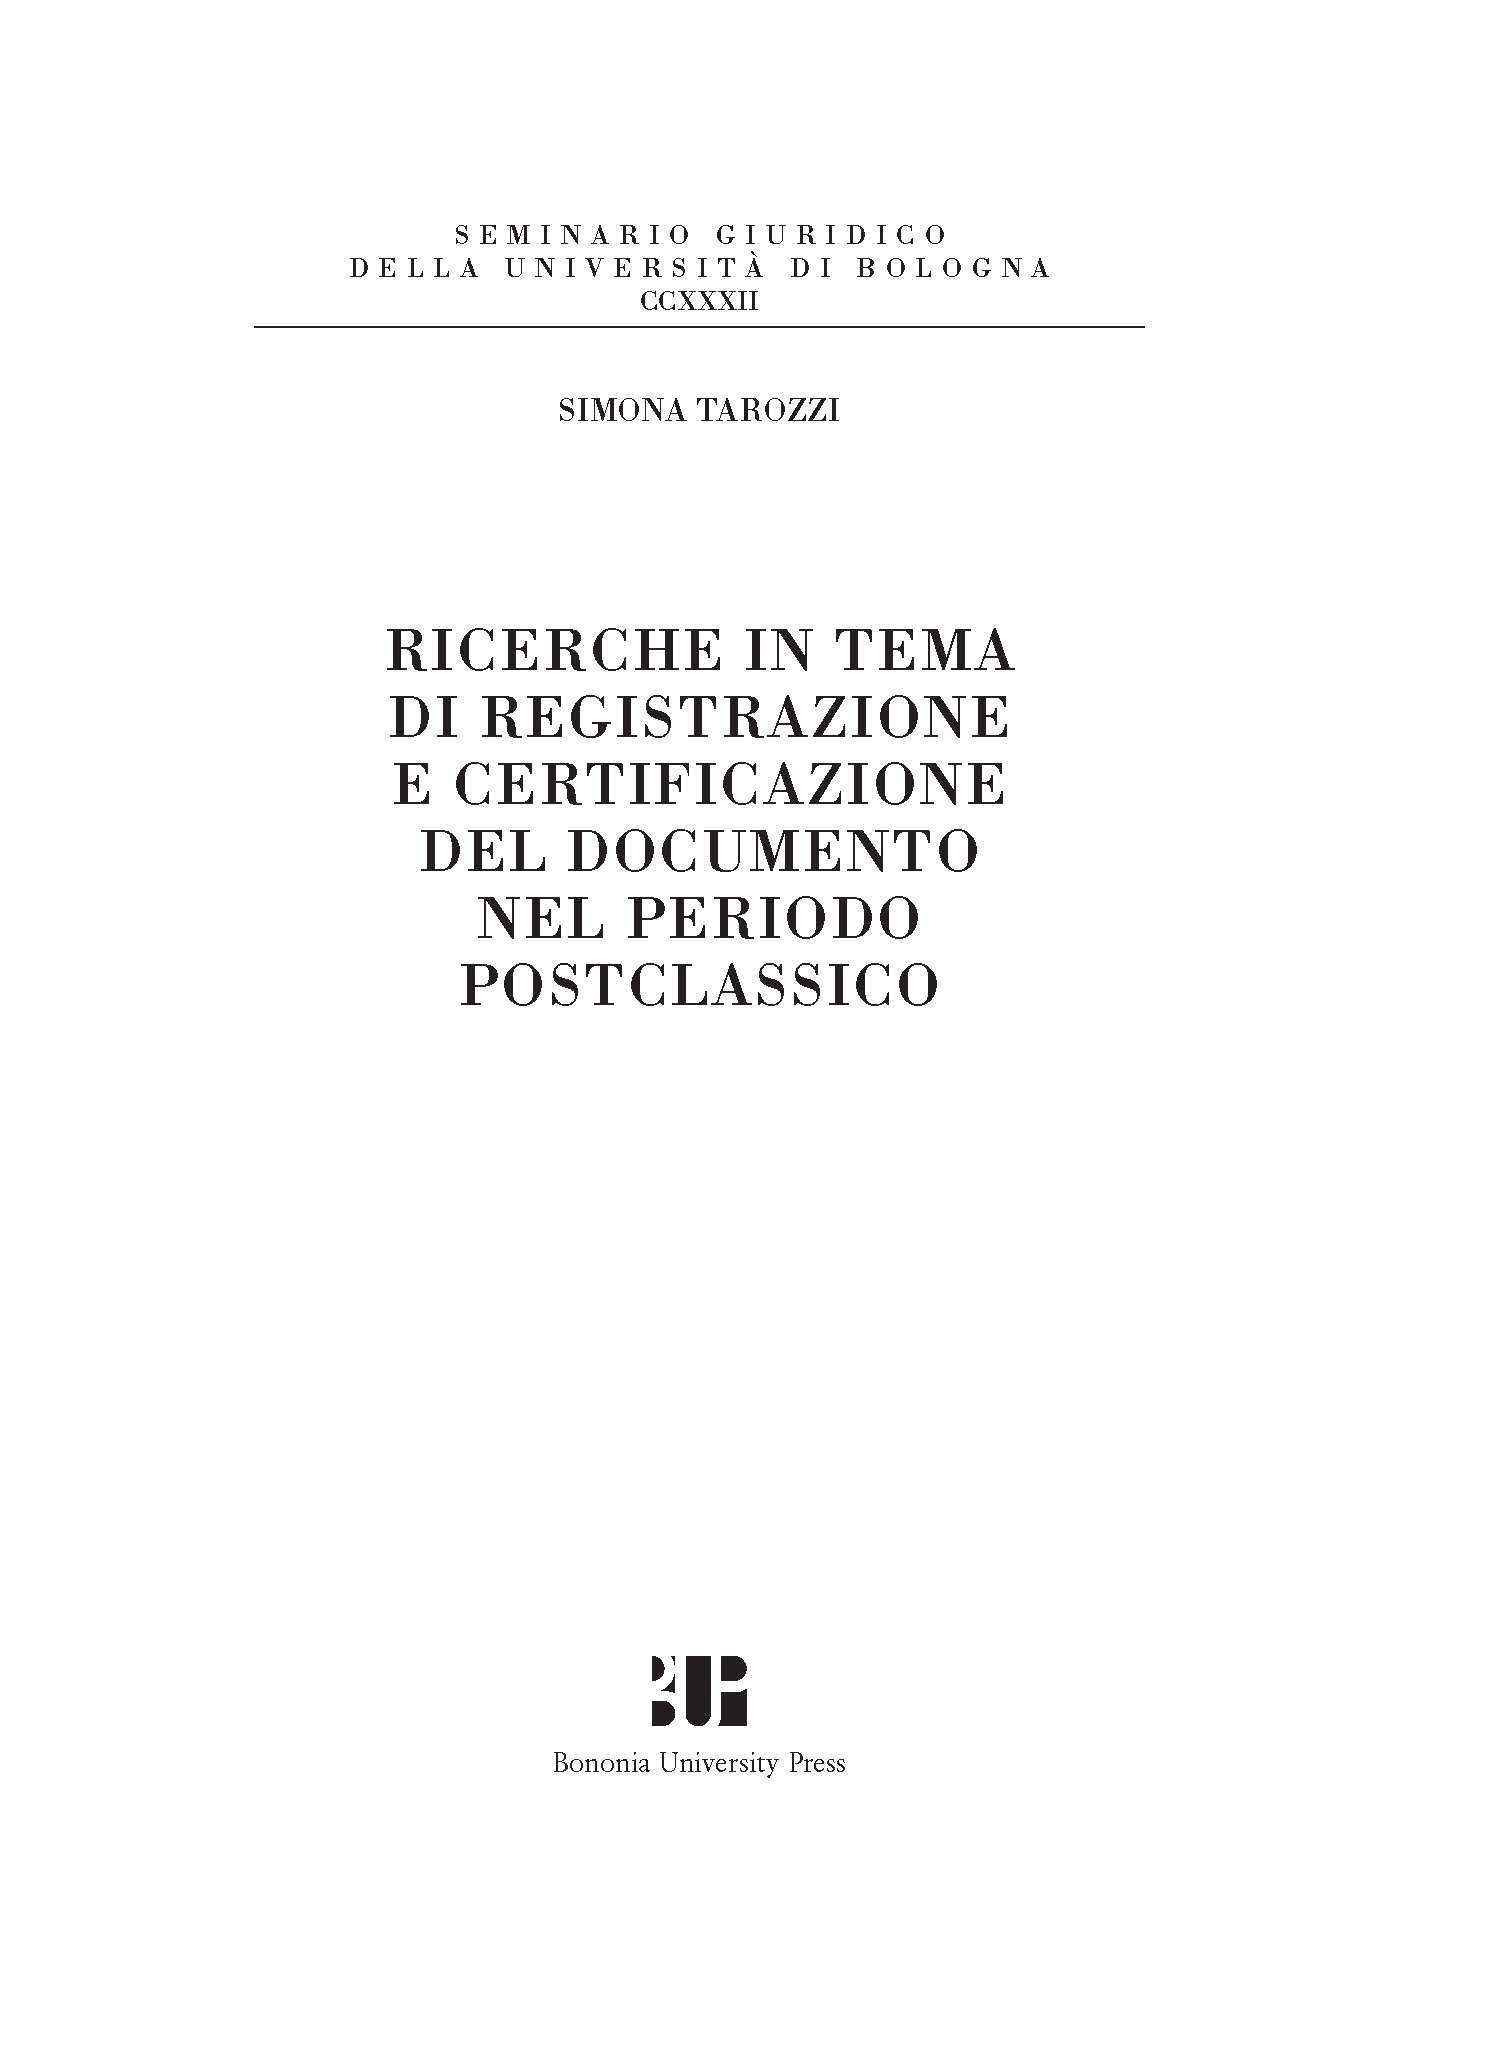 Ricerche in tema di registrazione e certificazione del documento nel periodo postclassico - Bologna University Press